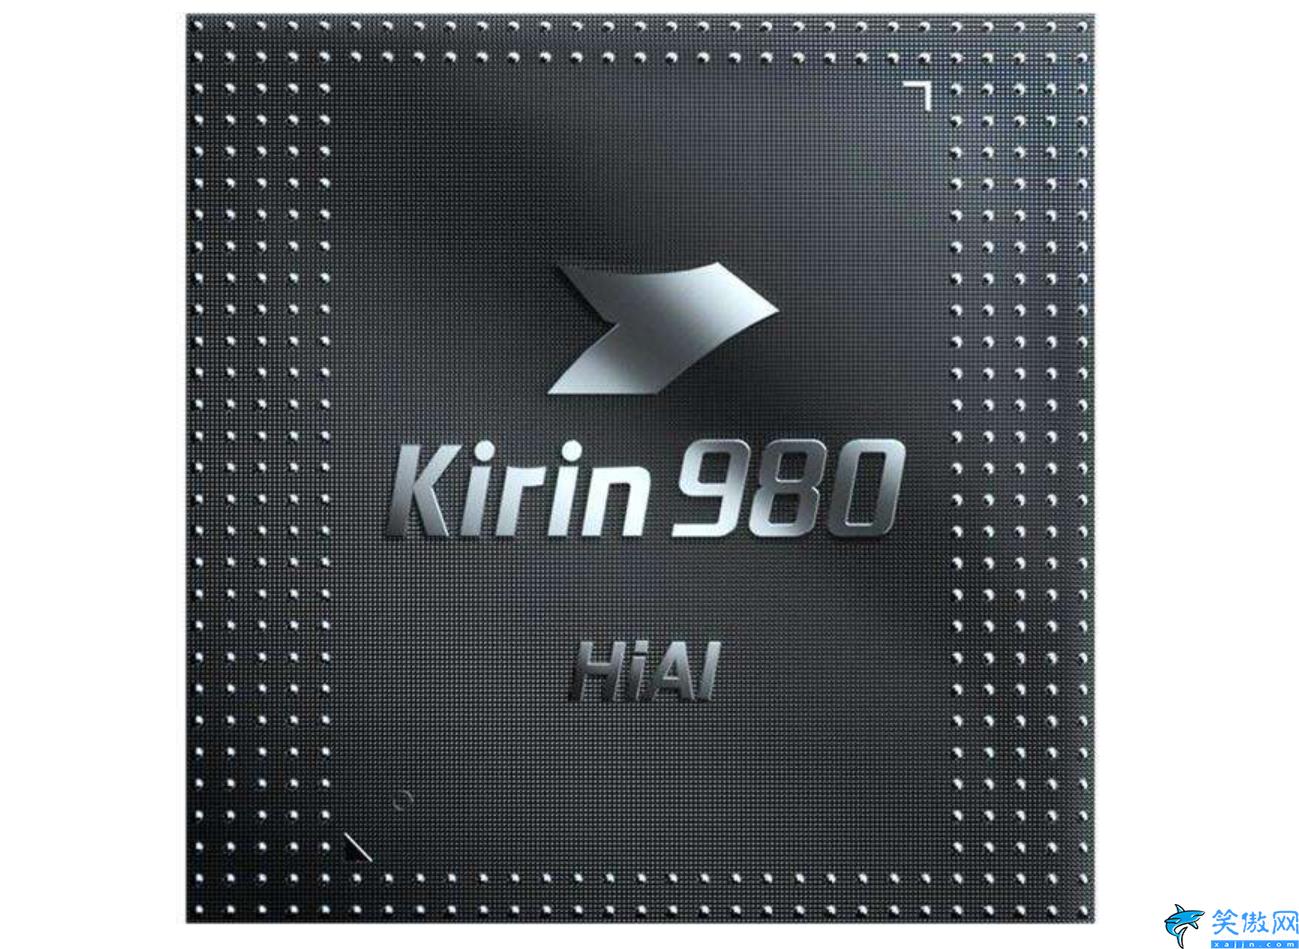 麒麟980处理器怎么样,Kirin980测评详述